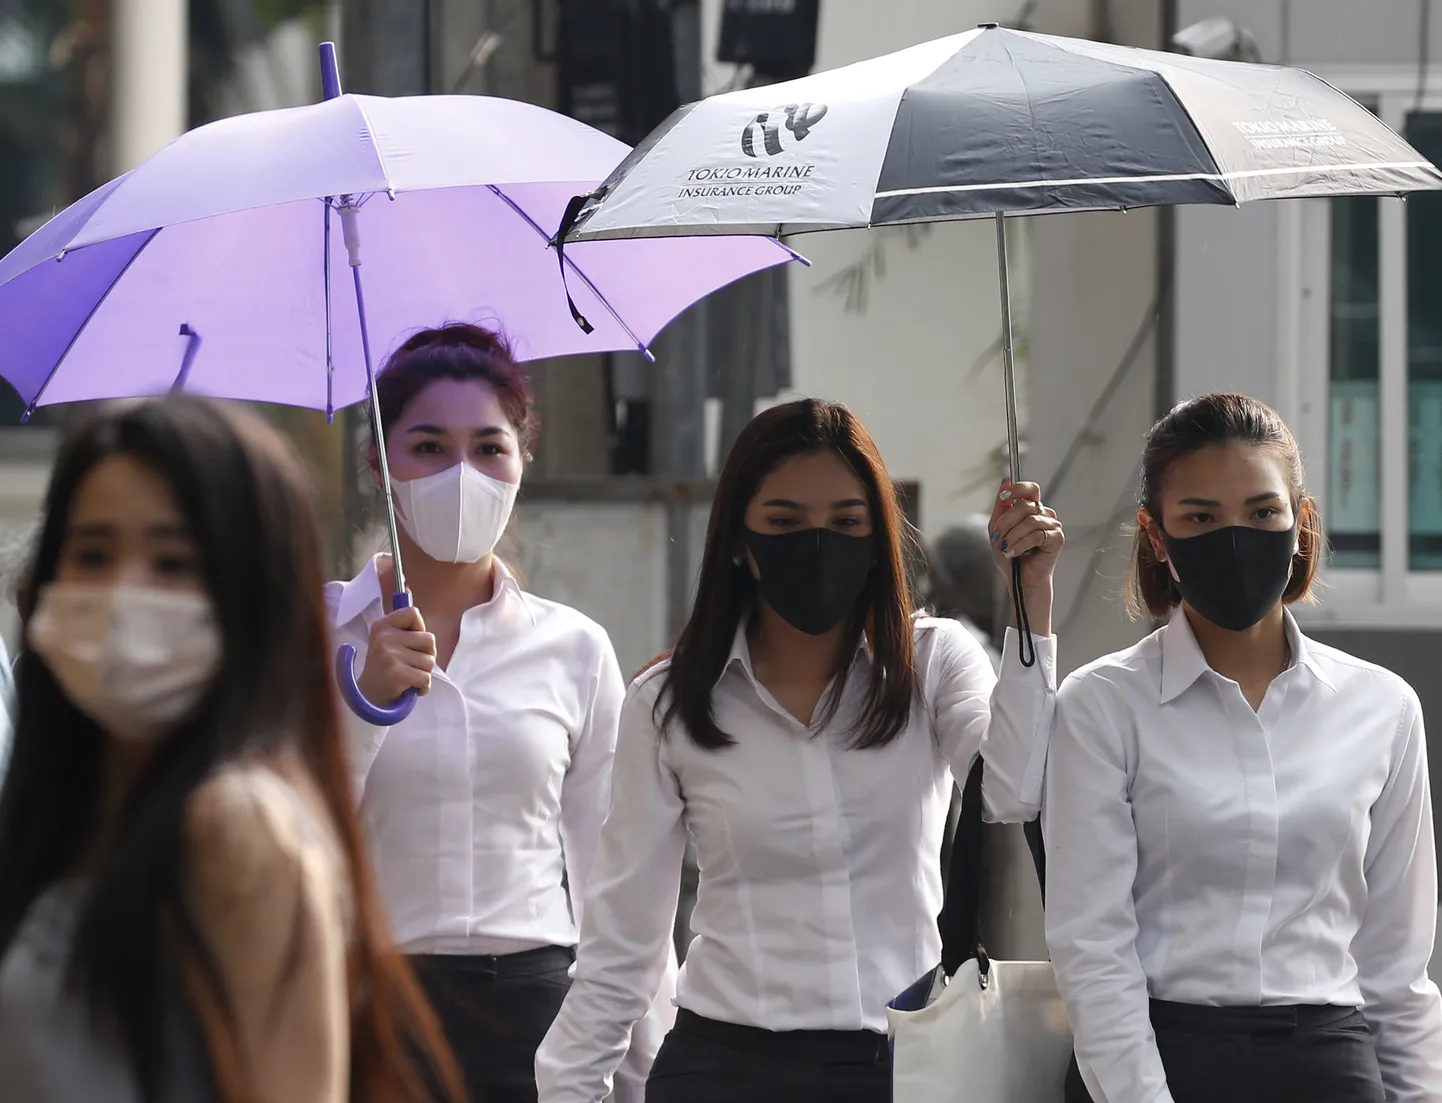 Jalakäijad Tai pealinnas Bangkokis, kus on õhusaastatuse tase tervisele ohtlikul tasemel.